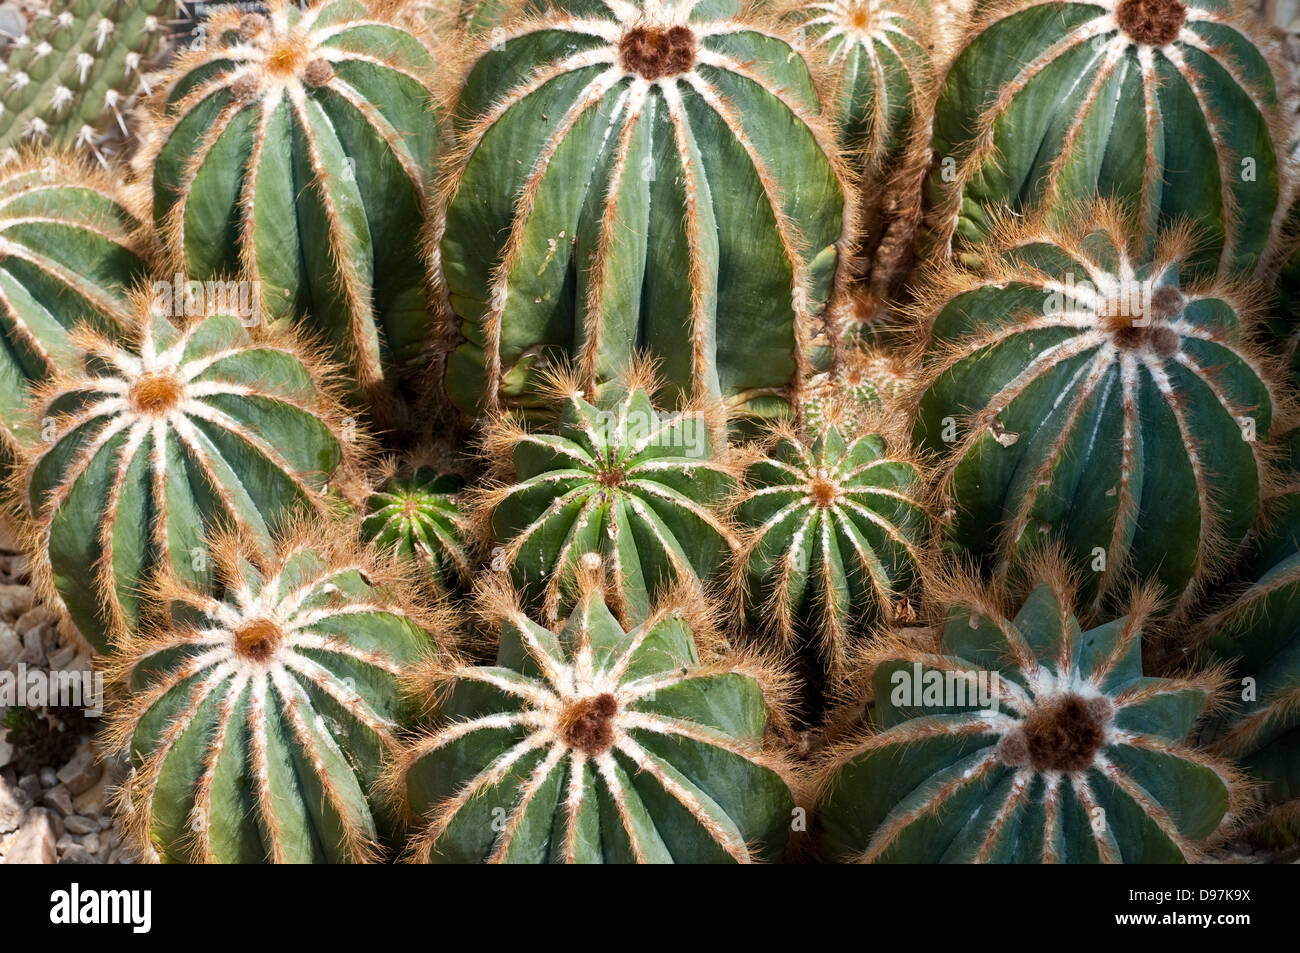 Parodia magnifica cactus Stock Photo